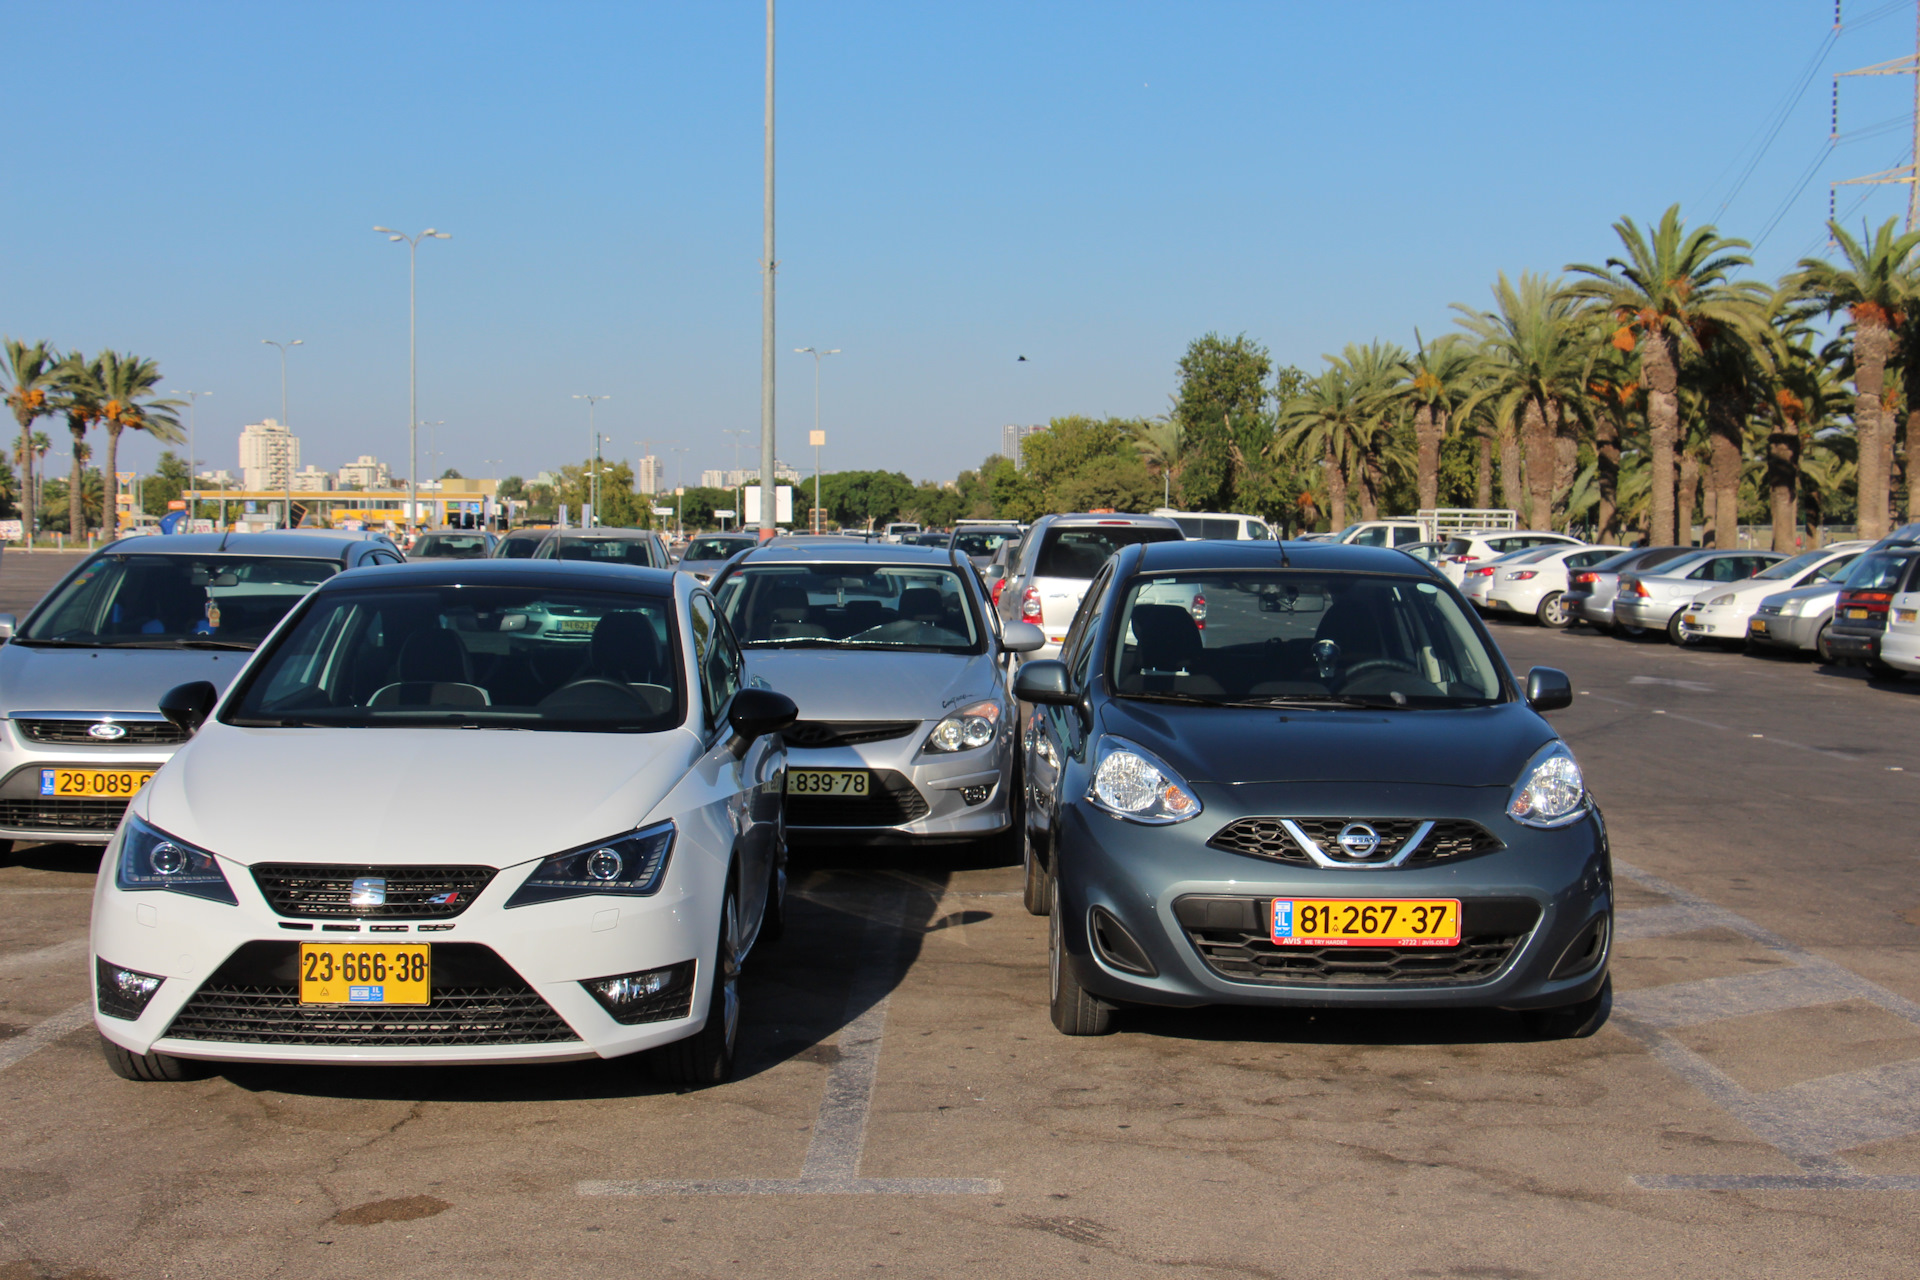 Сколько стоит автомобиль в израиле? — иммигрант сегодня